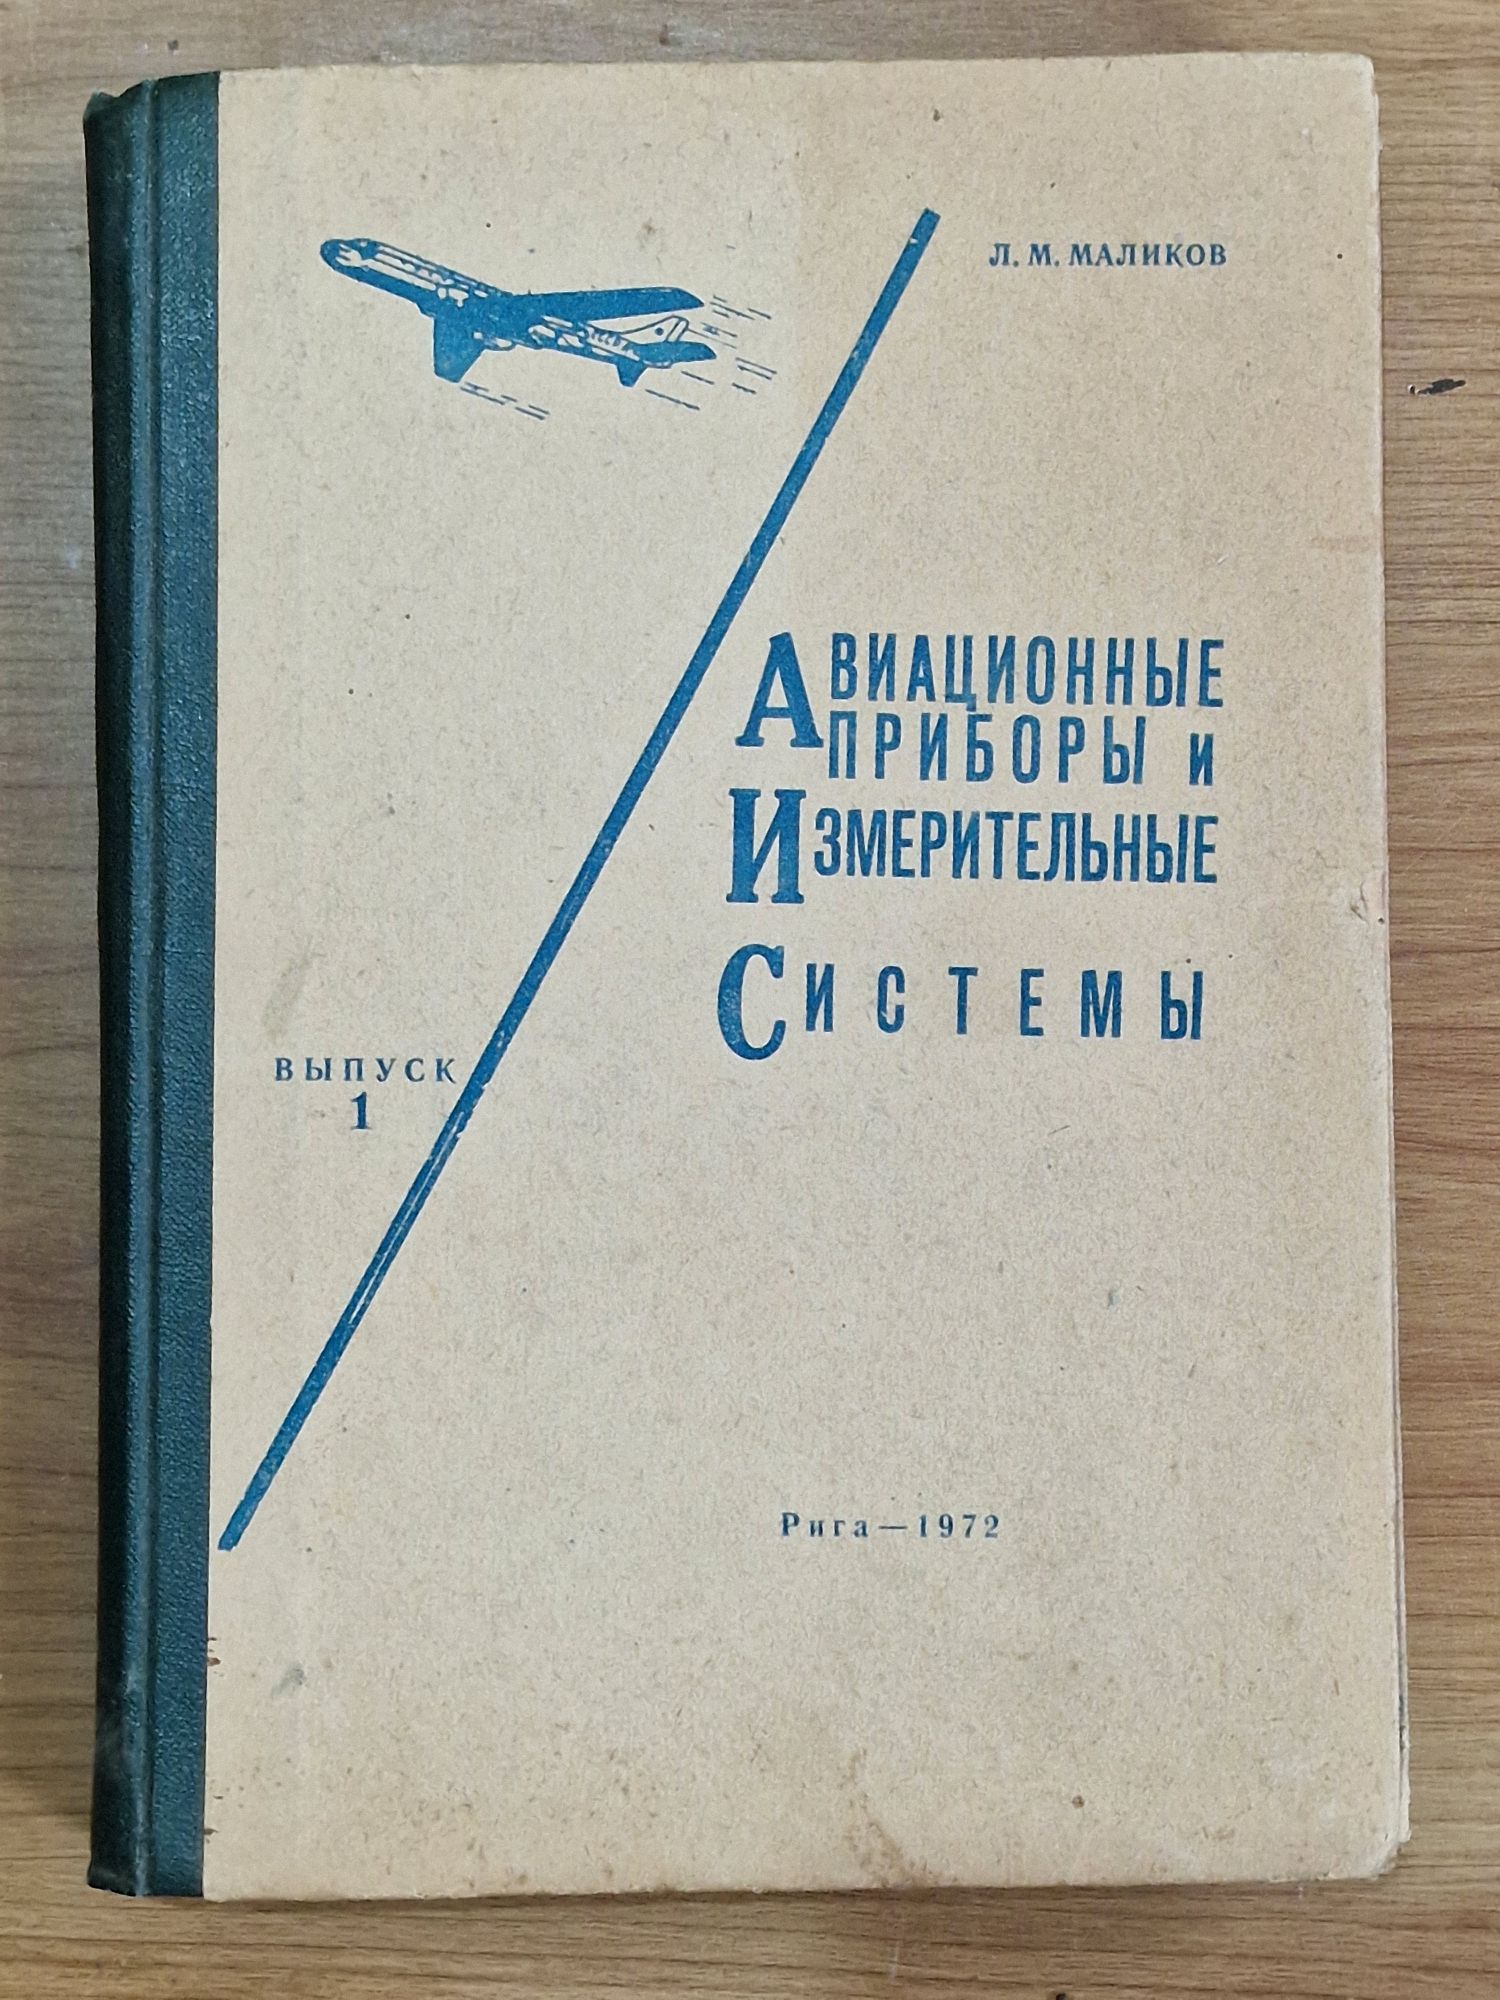 Книги з авіації (літаки)